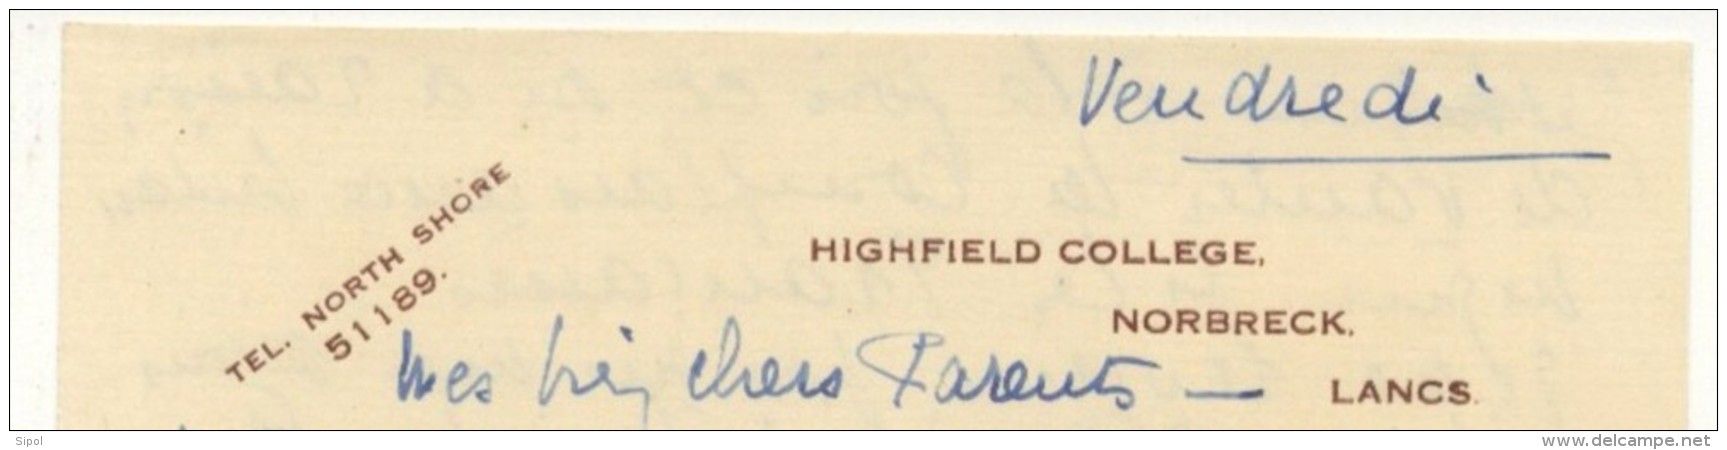 Lettre à Entête Highfield College ,  Norbreck Lancs  1935 Enviton BE - Regno Unito